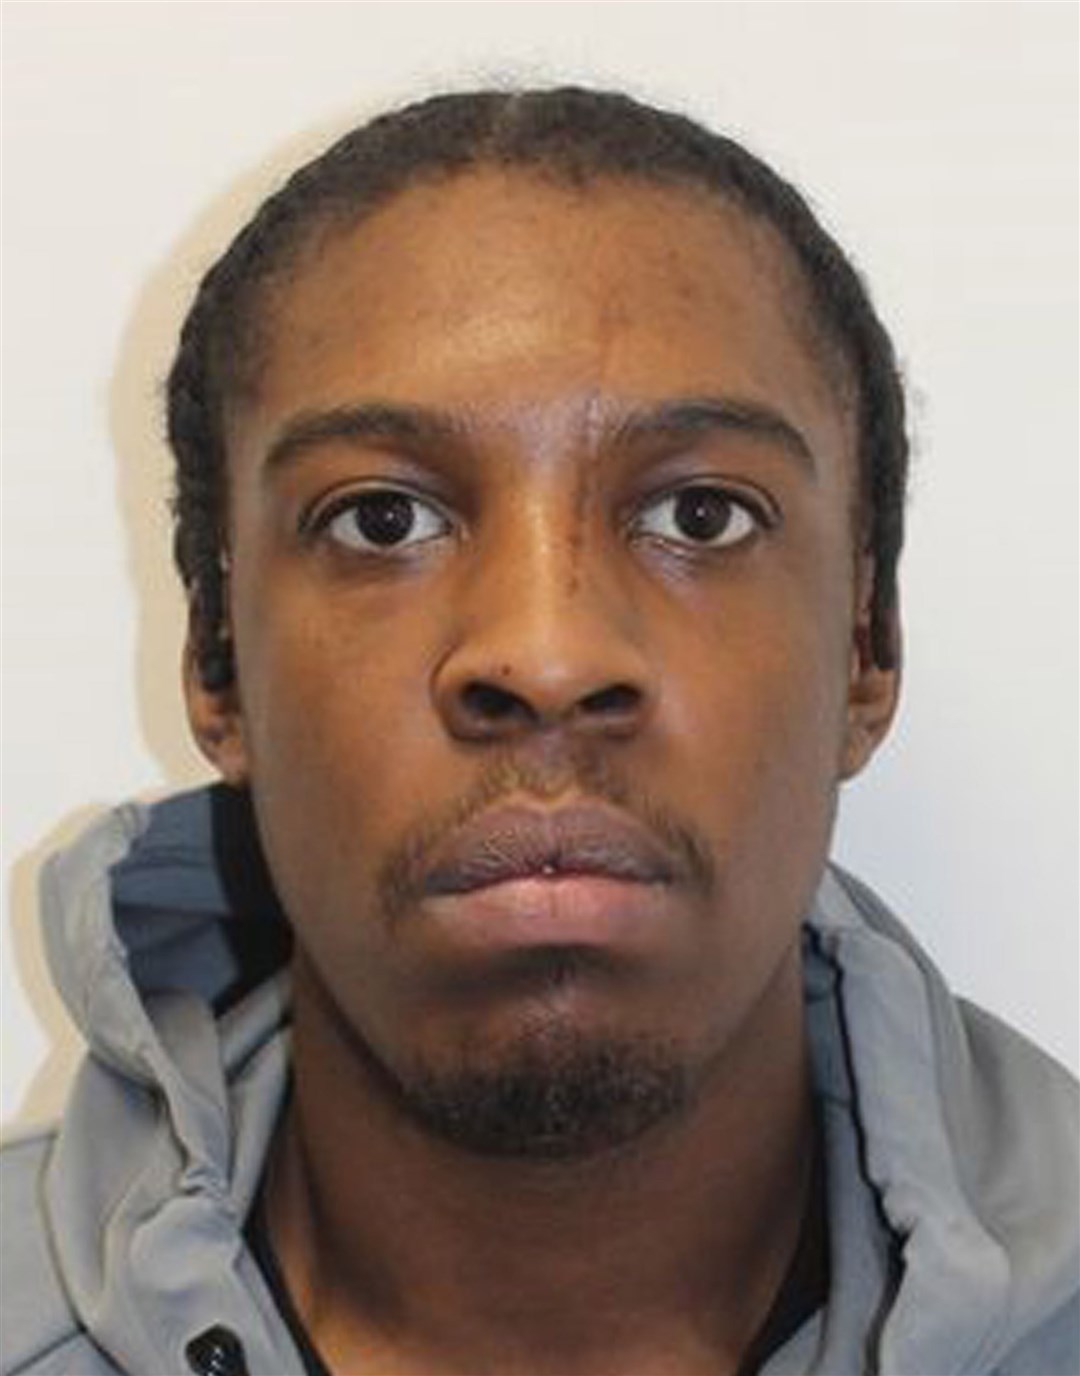 Godfrey Madondo stabbed his victim in the neck (Metropolitan Police/PA)